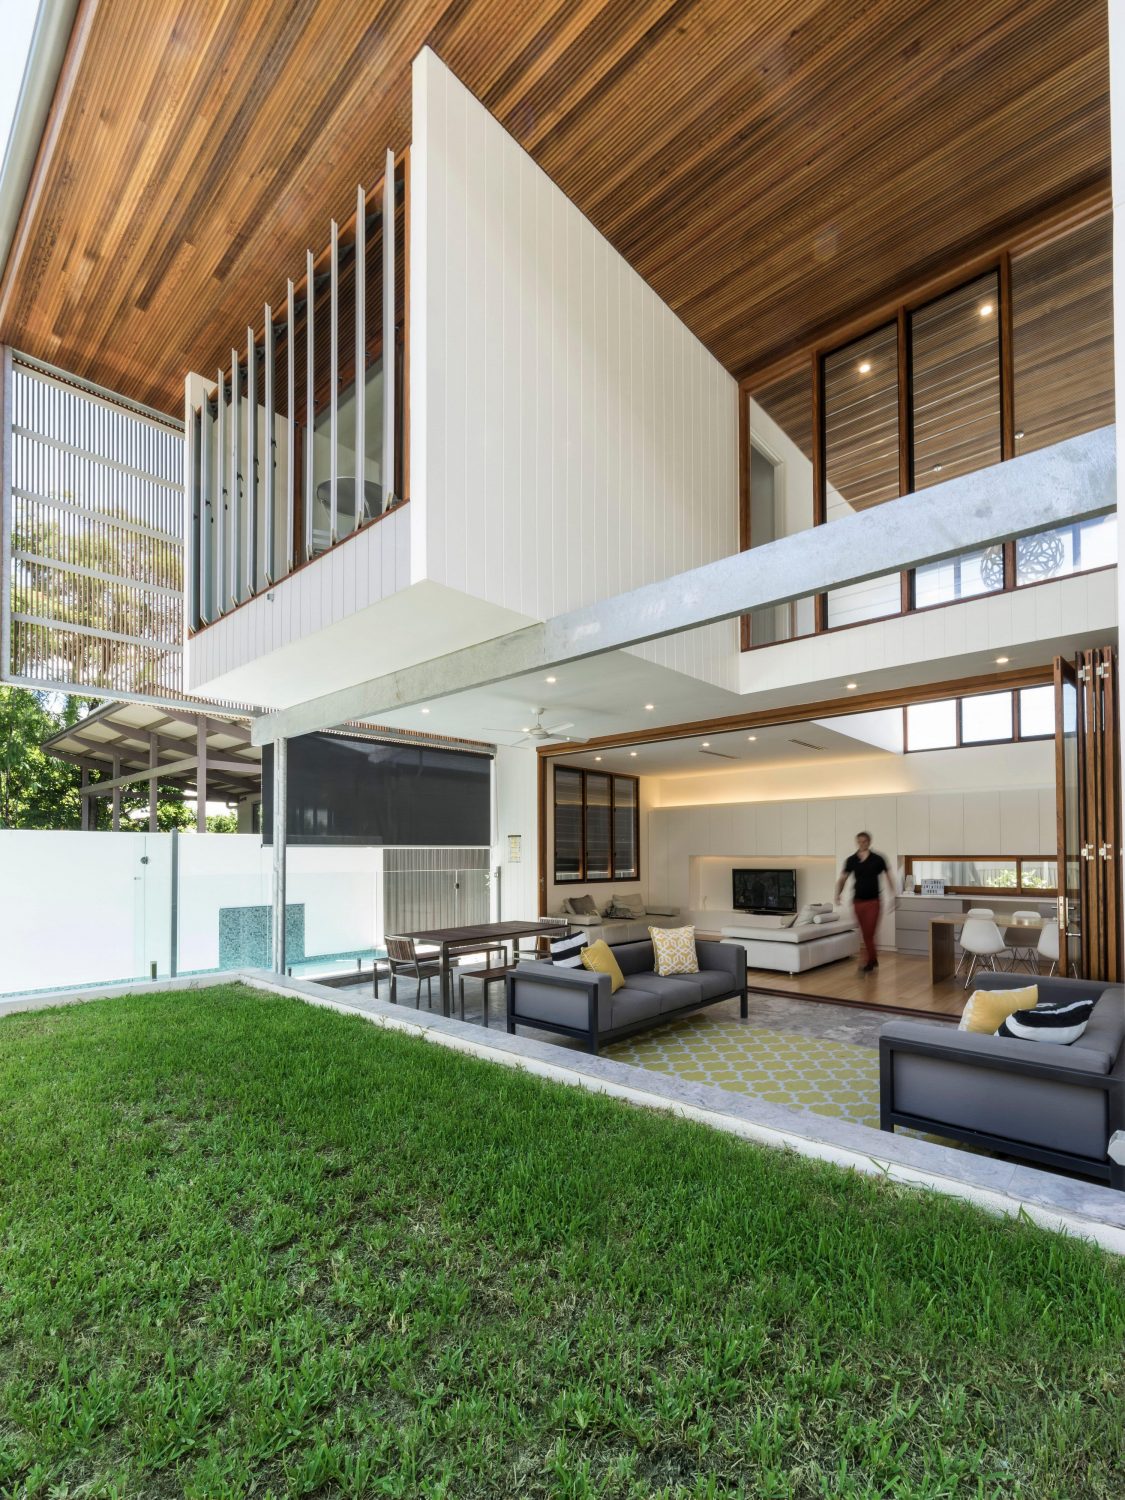 Backyard House by Joe Adsett Architects